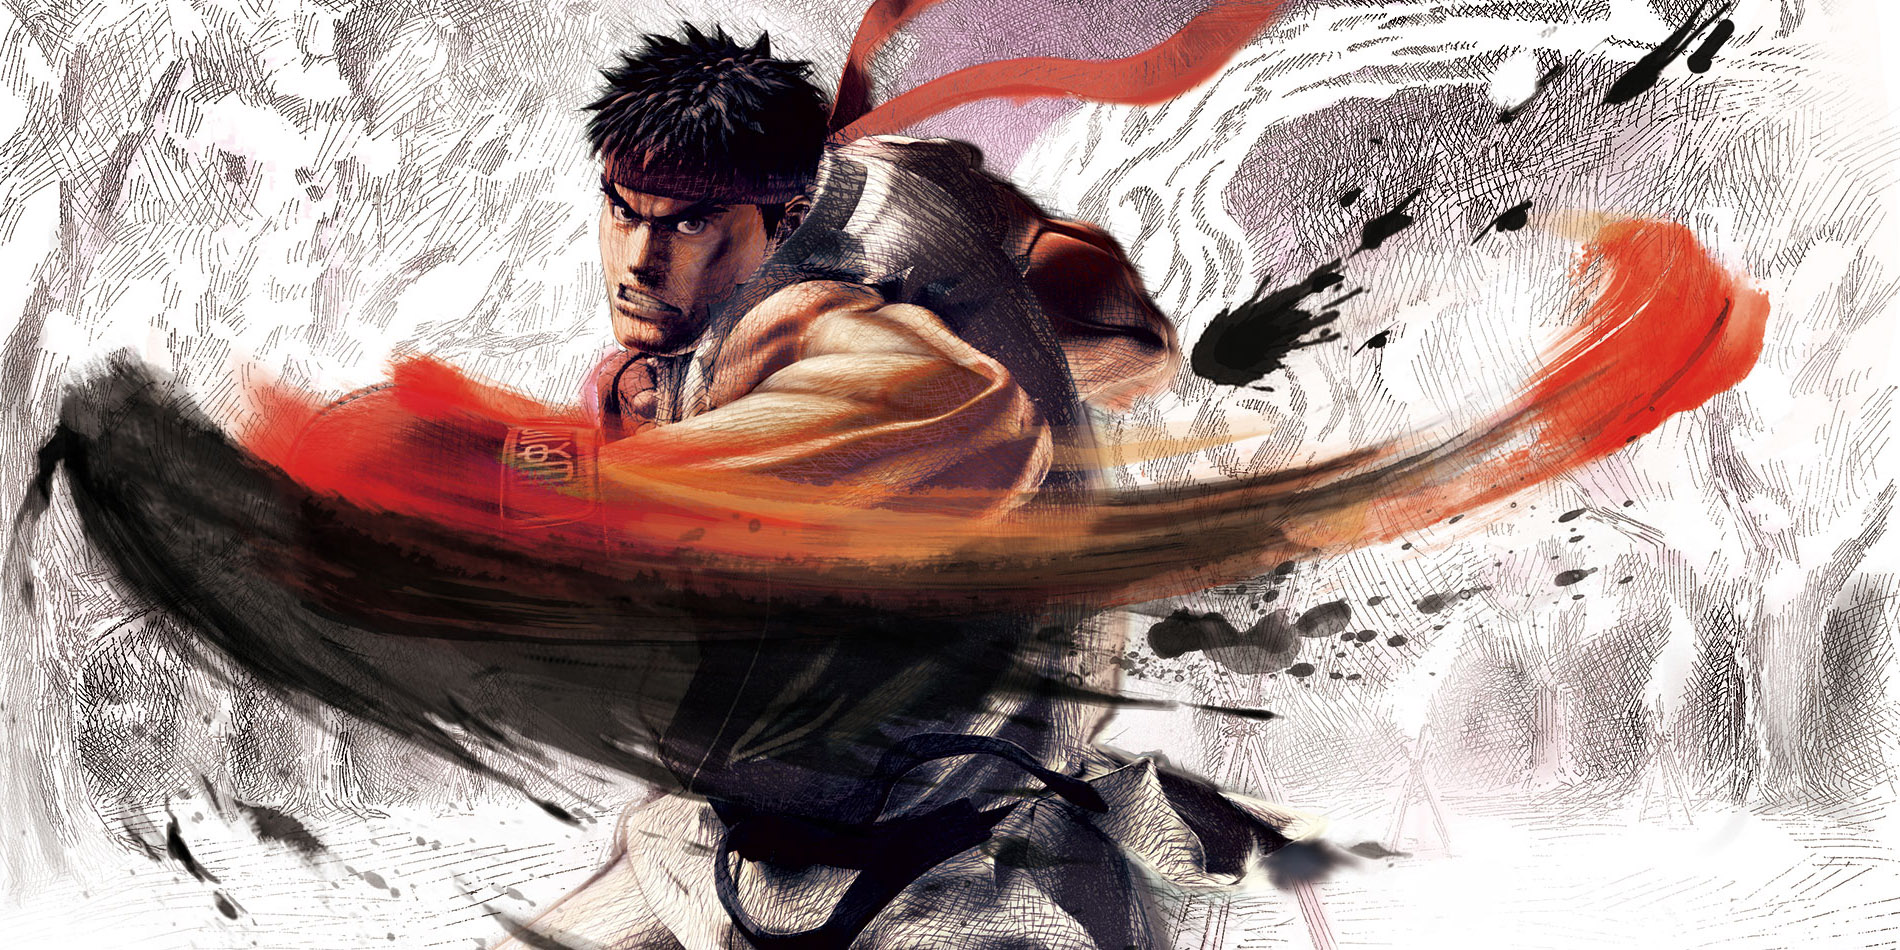 fondo de pantalla de ryu street fighter,kung fu,ilustración,personaje de ficción,cg artwork,diseño gráfico